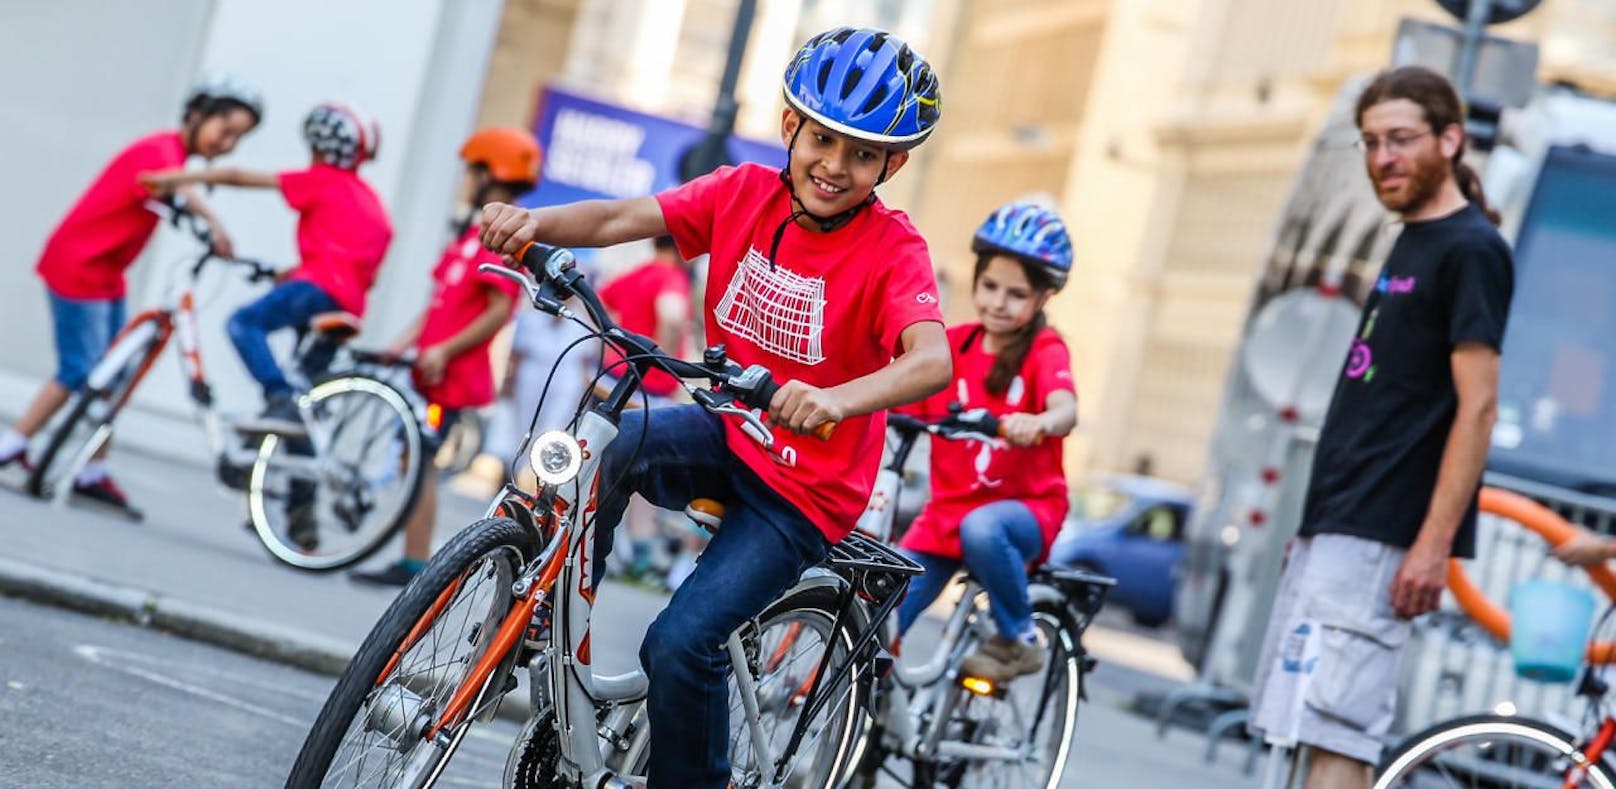 40 Kinder fallen bei Fahrradprüfung durch